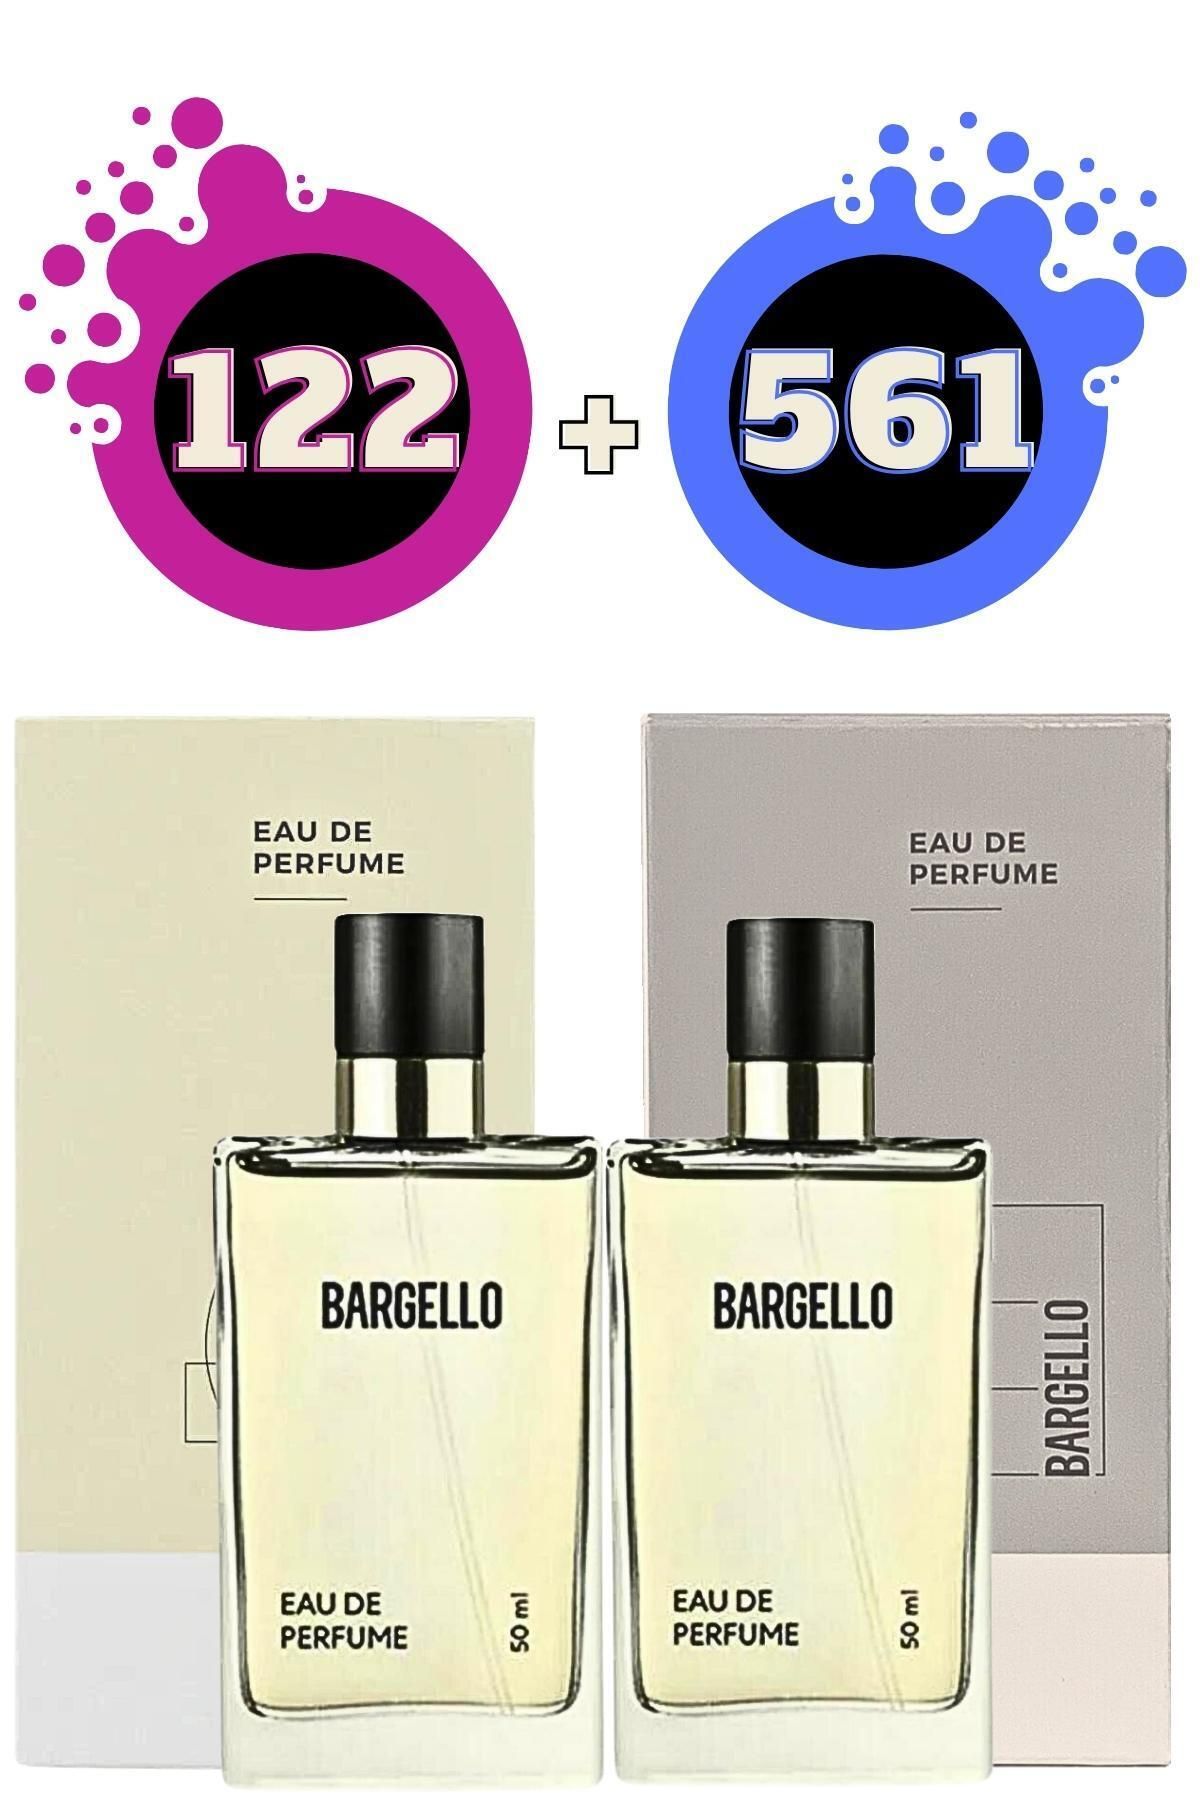 Bargello 122 Oriental Kadın 561 Fresh Erkek Parfüm Seti